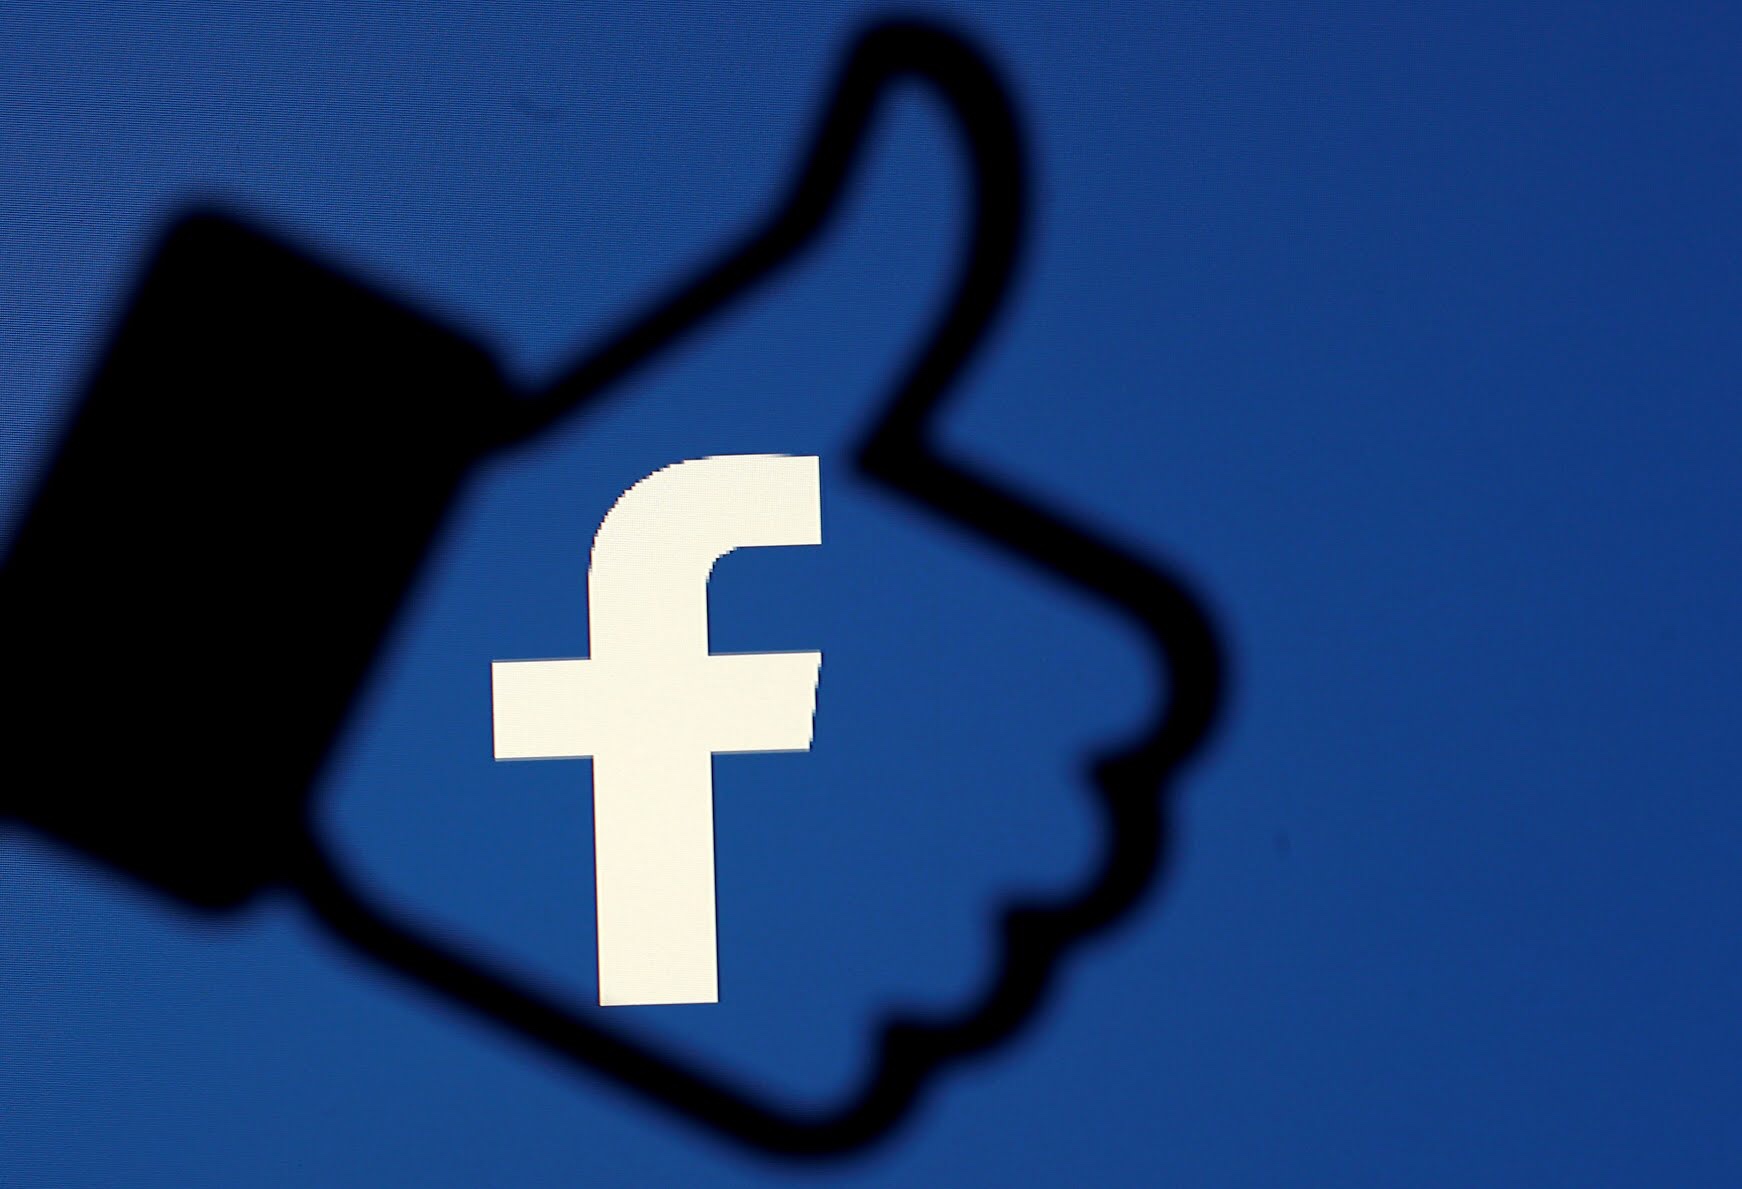 भाजपकडून फेसबुकला आठवड्याला ५३लाख रुपये बहाल